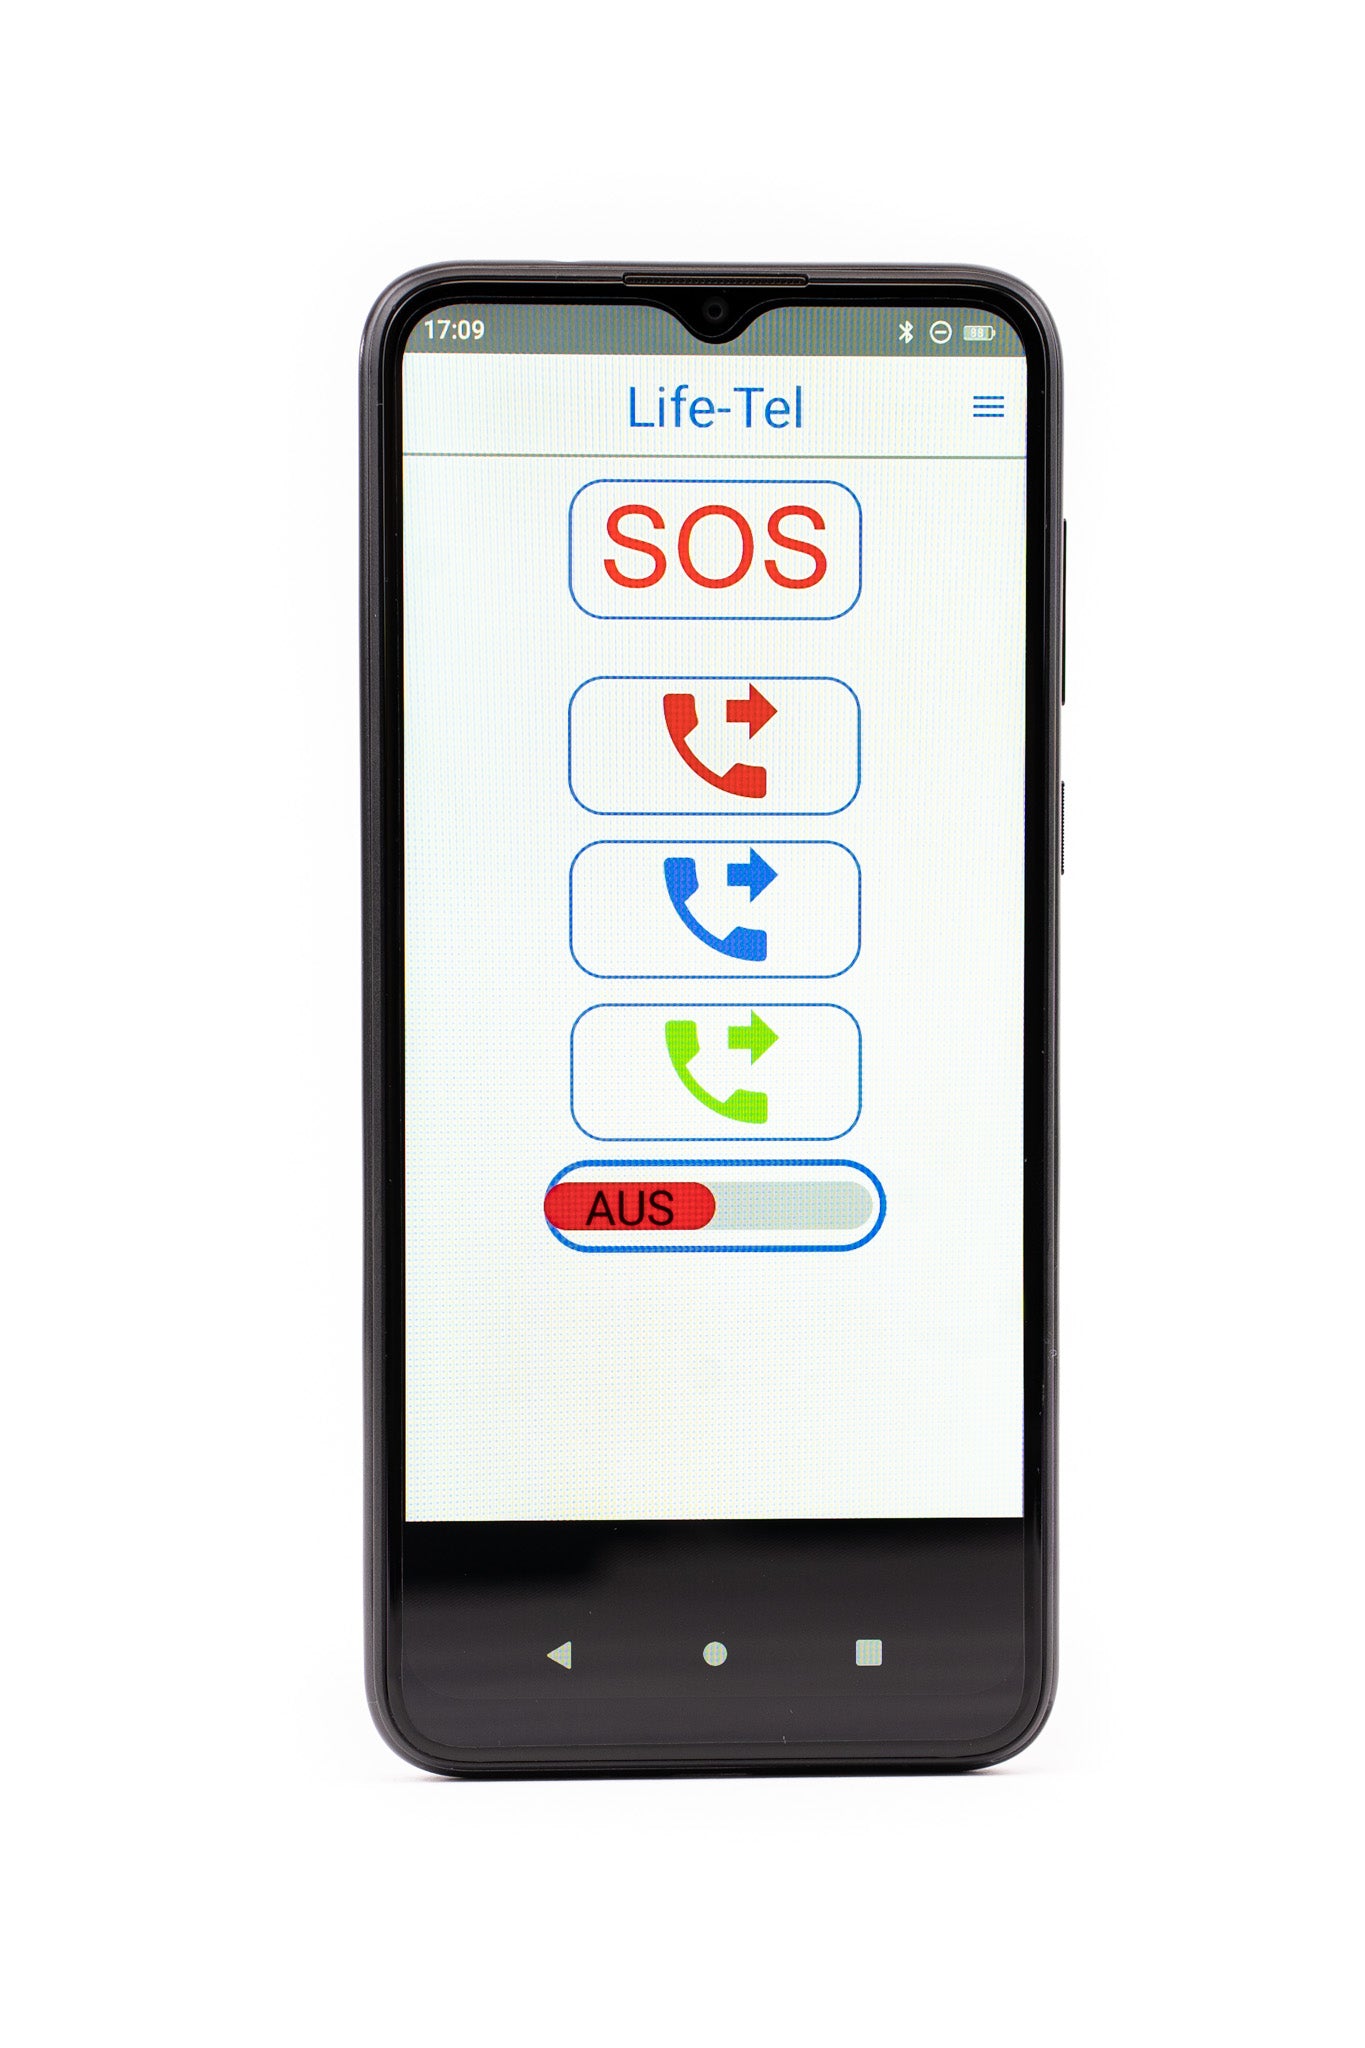 Life Tel 6 L - Smartphone industriel comme système de signal d'urgence personnel (PNA) pour les travailleurs isolés, y compris l'interrupteur d'homme mort et l'application d'appel d'urgence